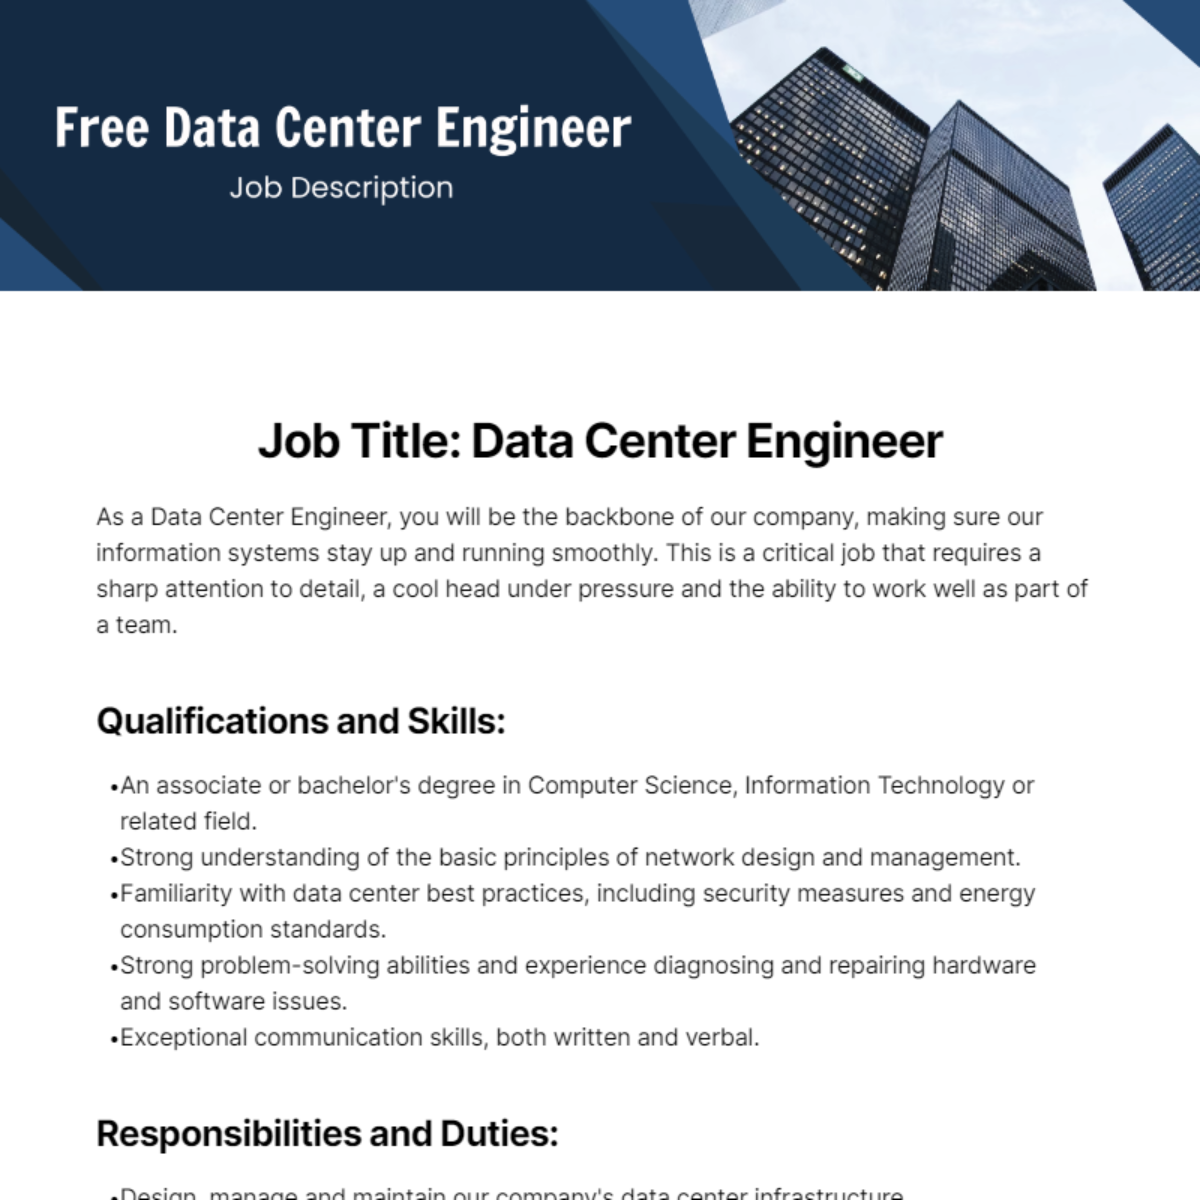 Free Data Center Engineer Job Description Template